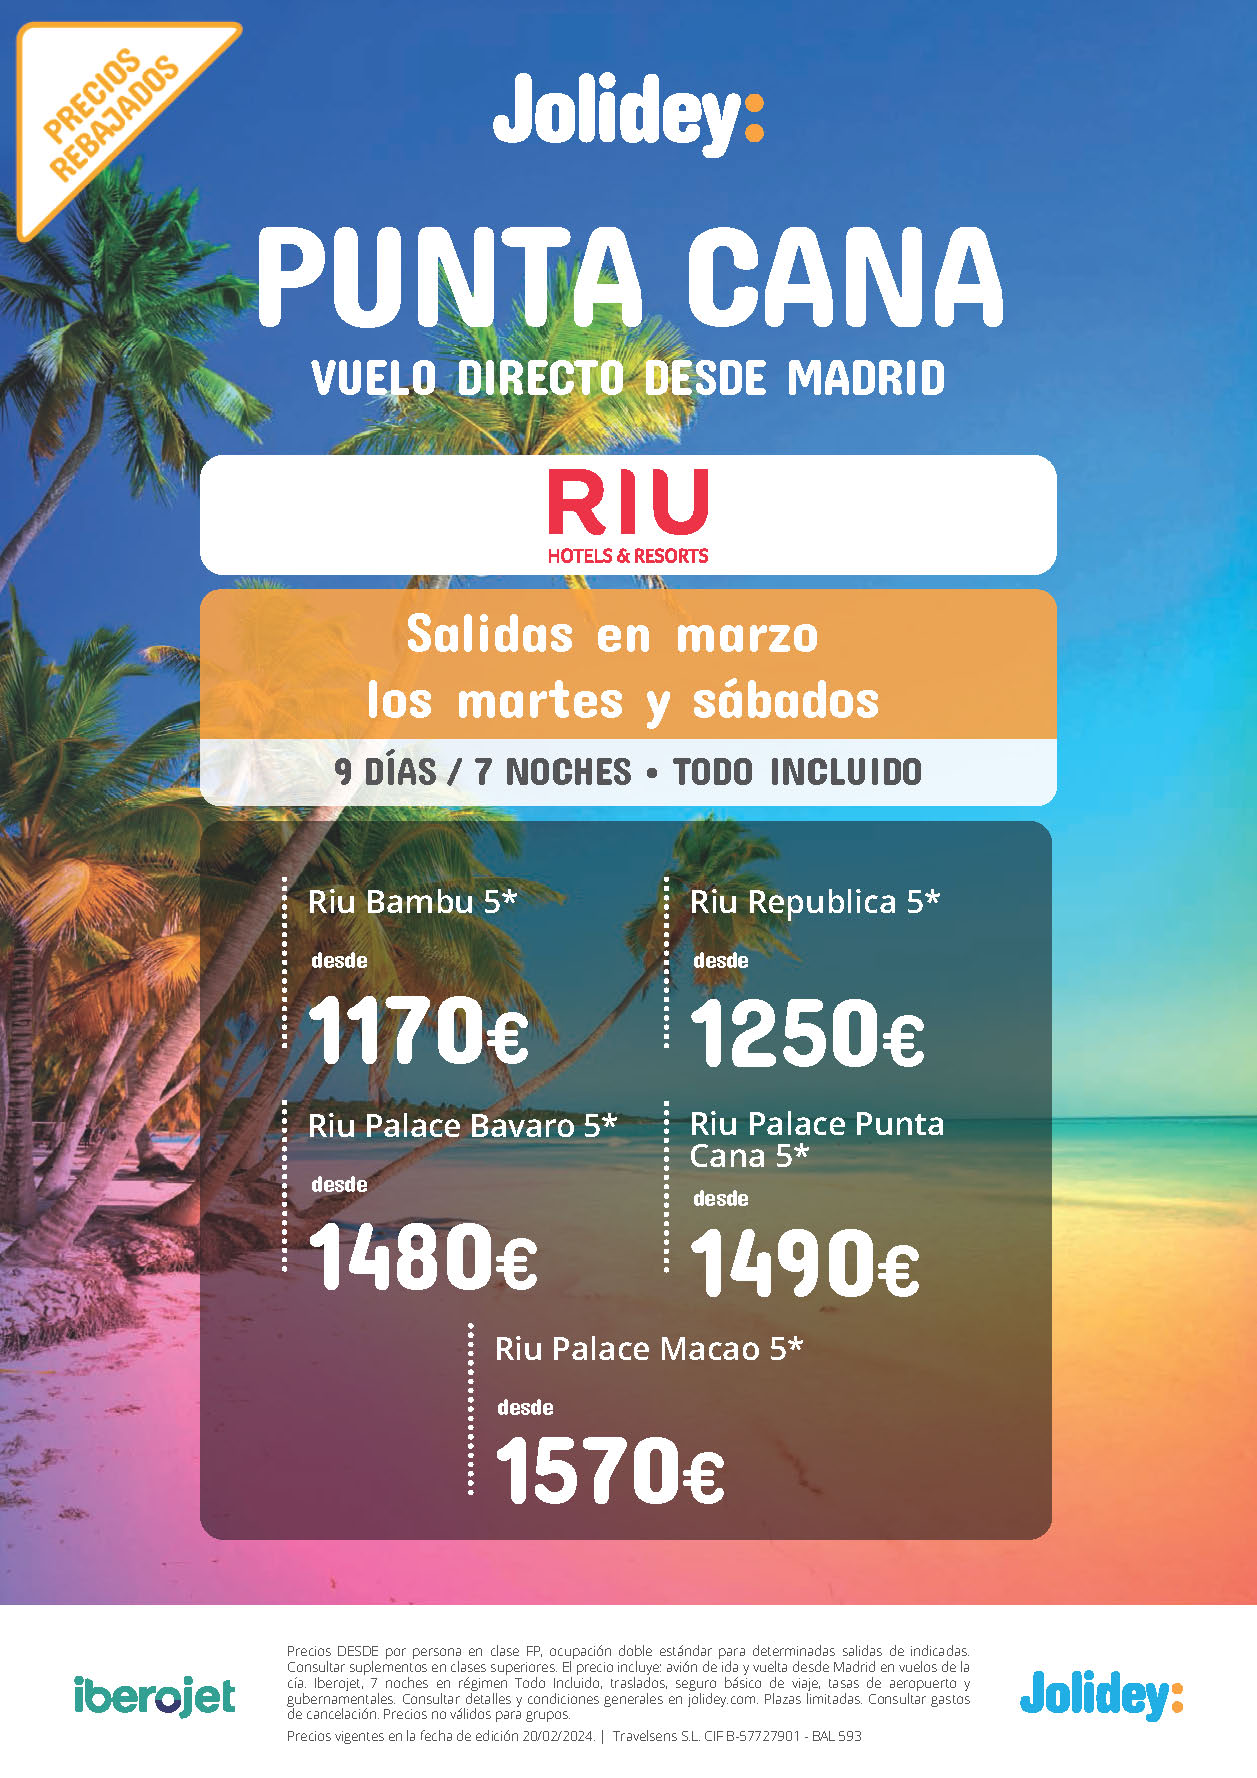 Oferta Jolidey Estancia en Punta Cana 9 dias Hotel Riu 5 estrellas Todo Incluido salidas Marzo 2024 en vuelo directo desde Madrid